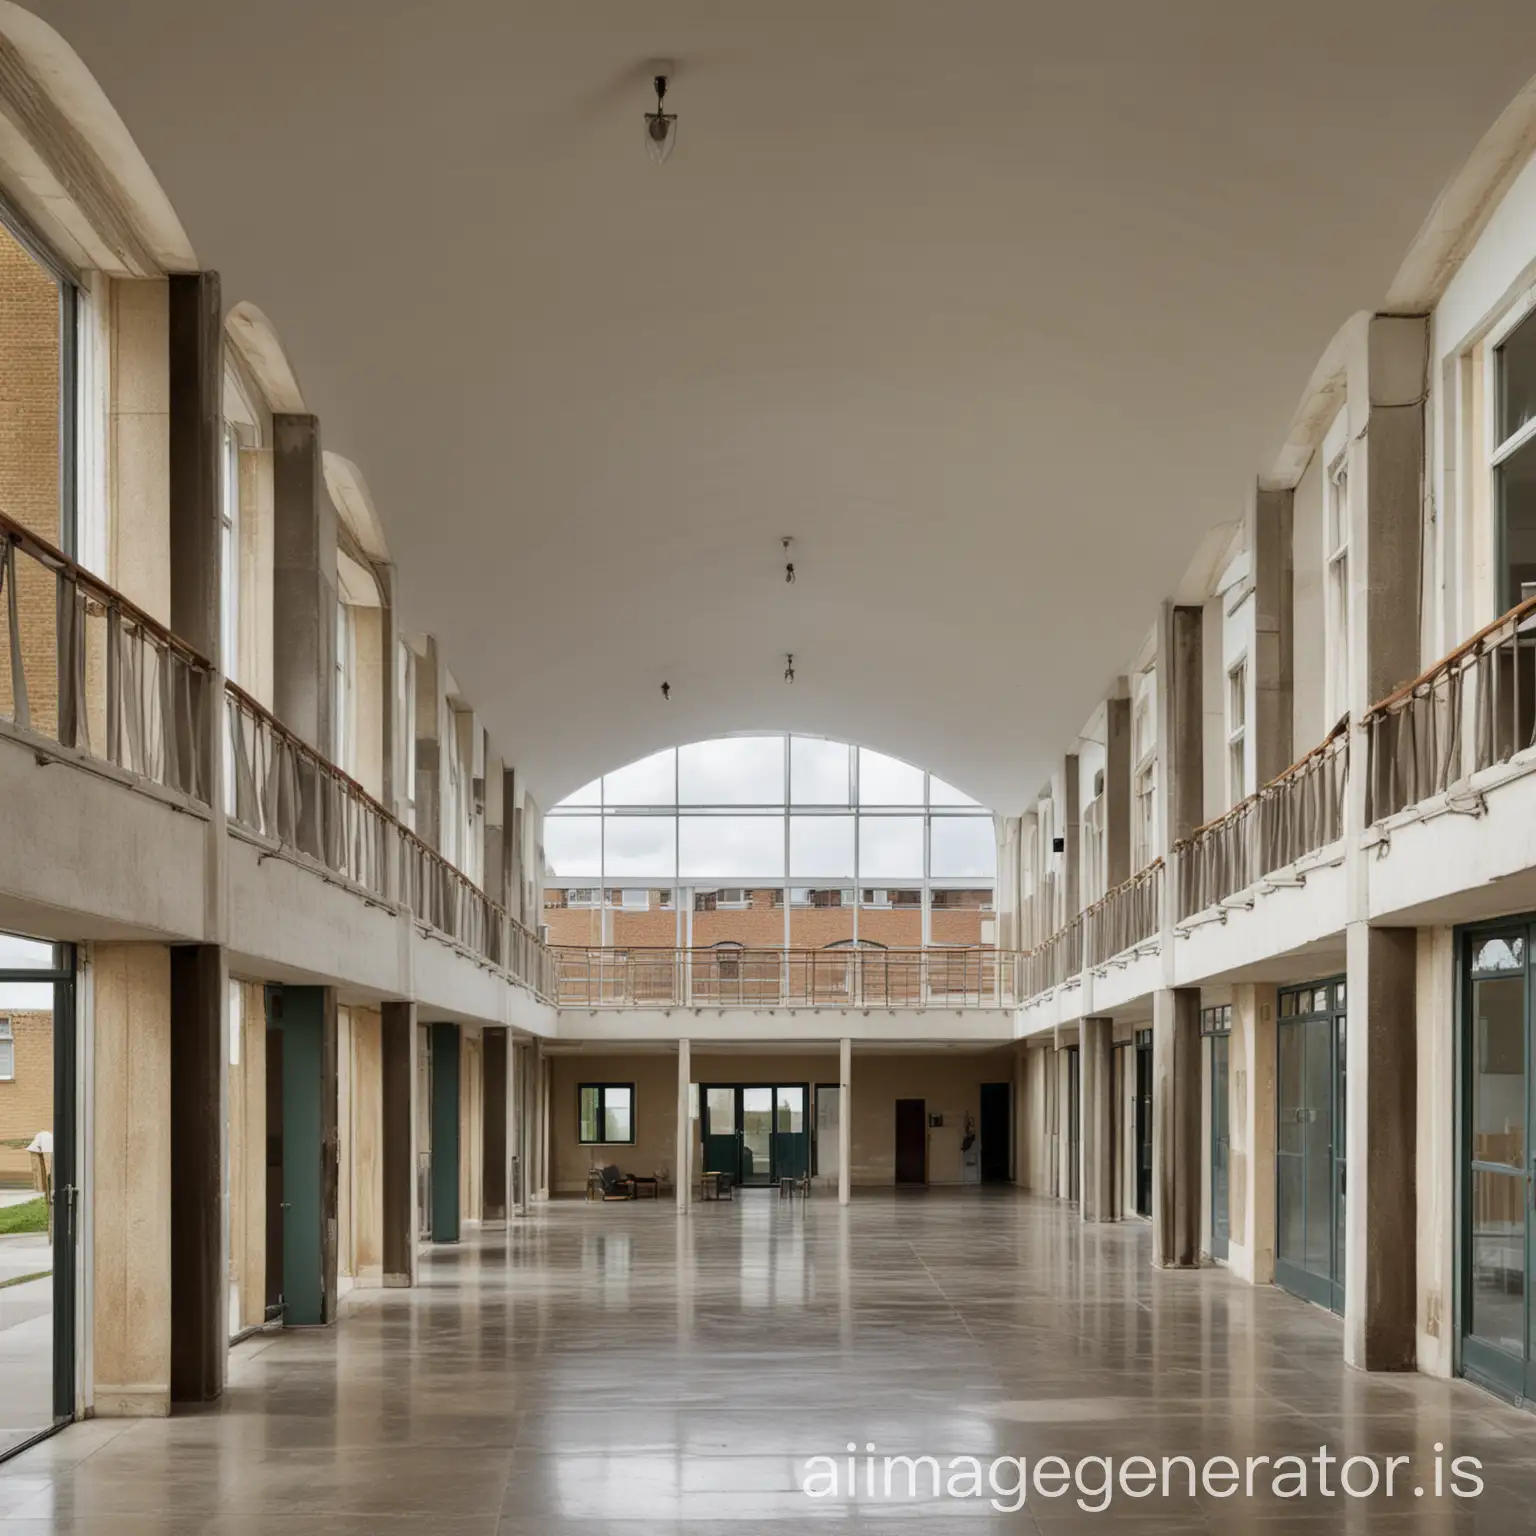 Architectural-Fusion-Hunstanton-School-and-Maison-DomIno-Hybrid-Design